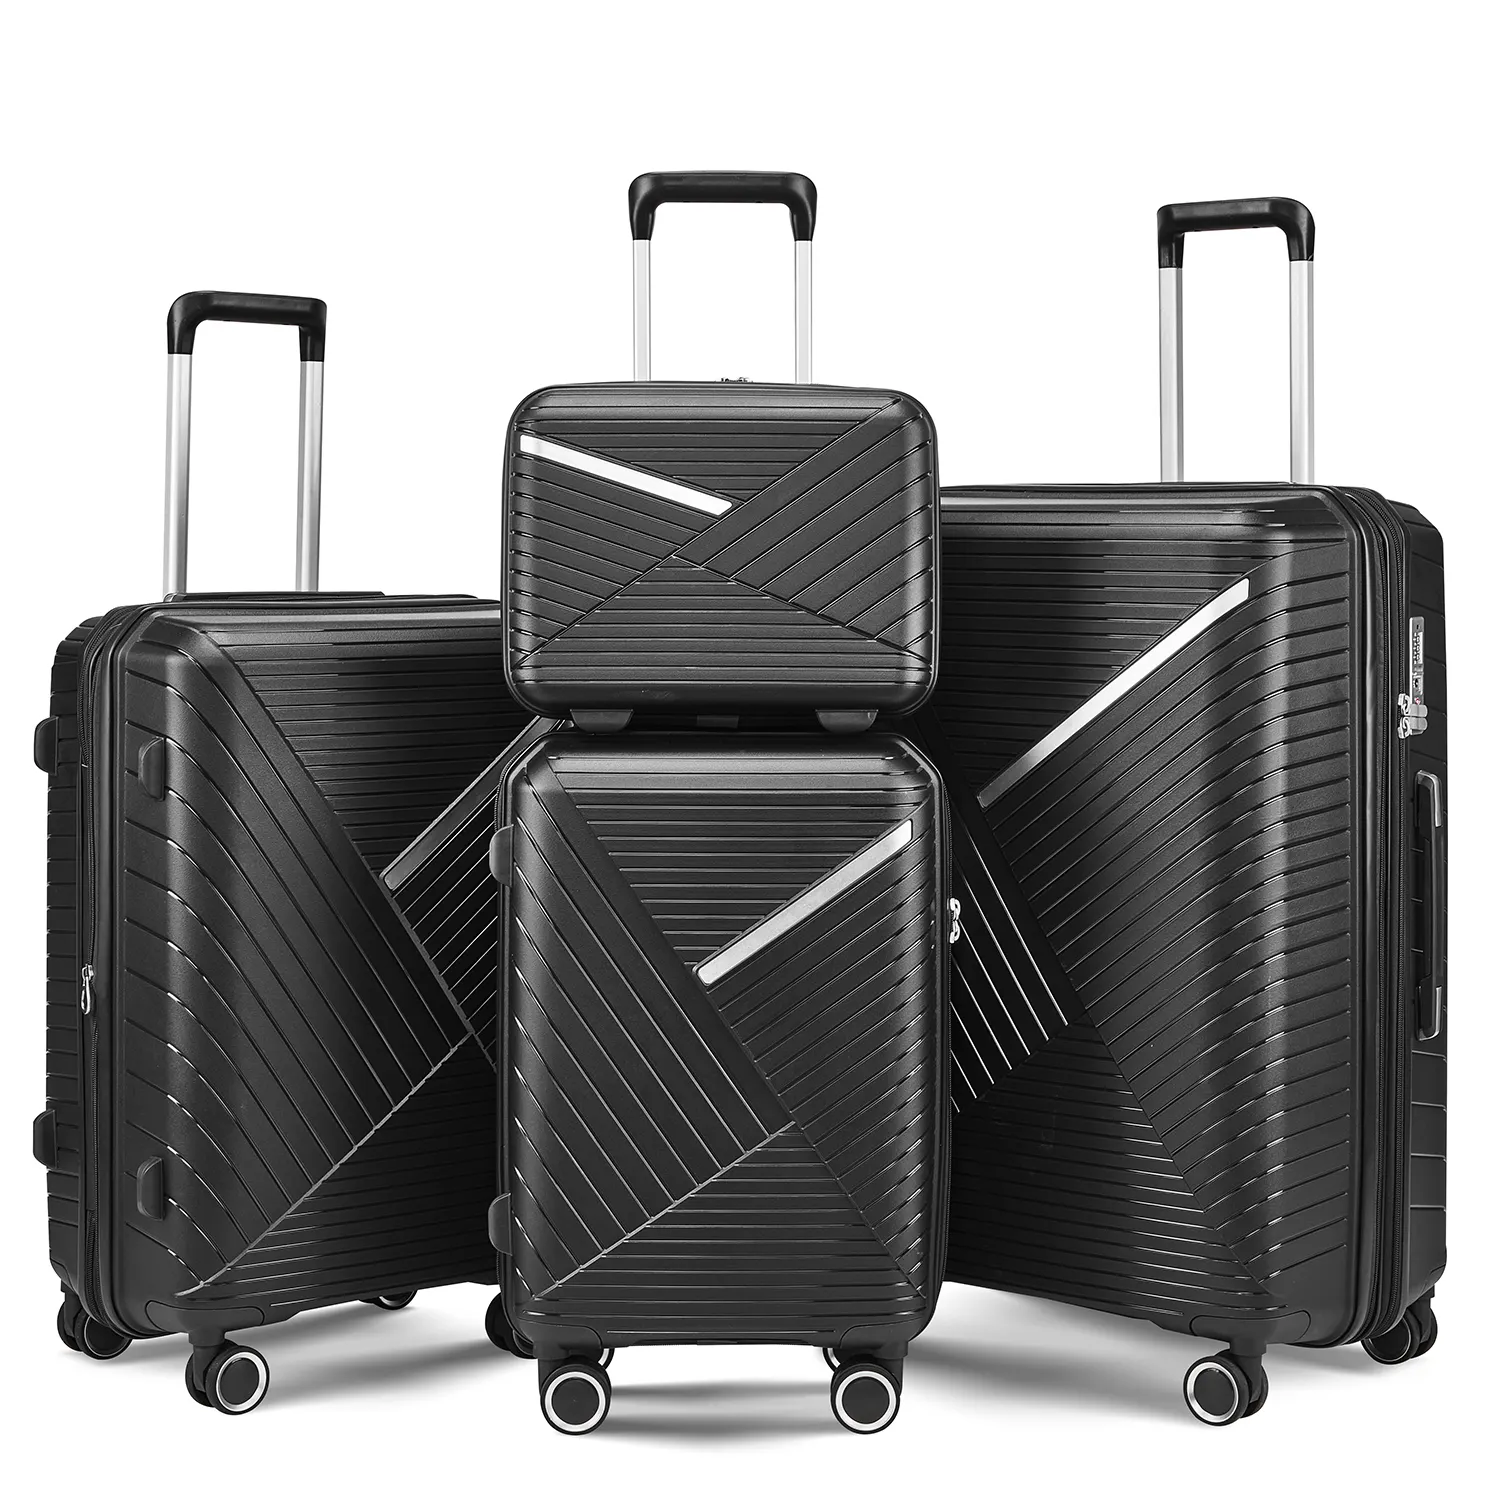 Seyahat ABS sert kabuk valiz çok fonksiyonlu bagaj setleri 3 parça 4 tekerlekler, seyahat tarzı bavul 3 parça sert bagaj seti